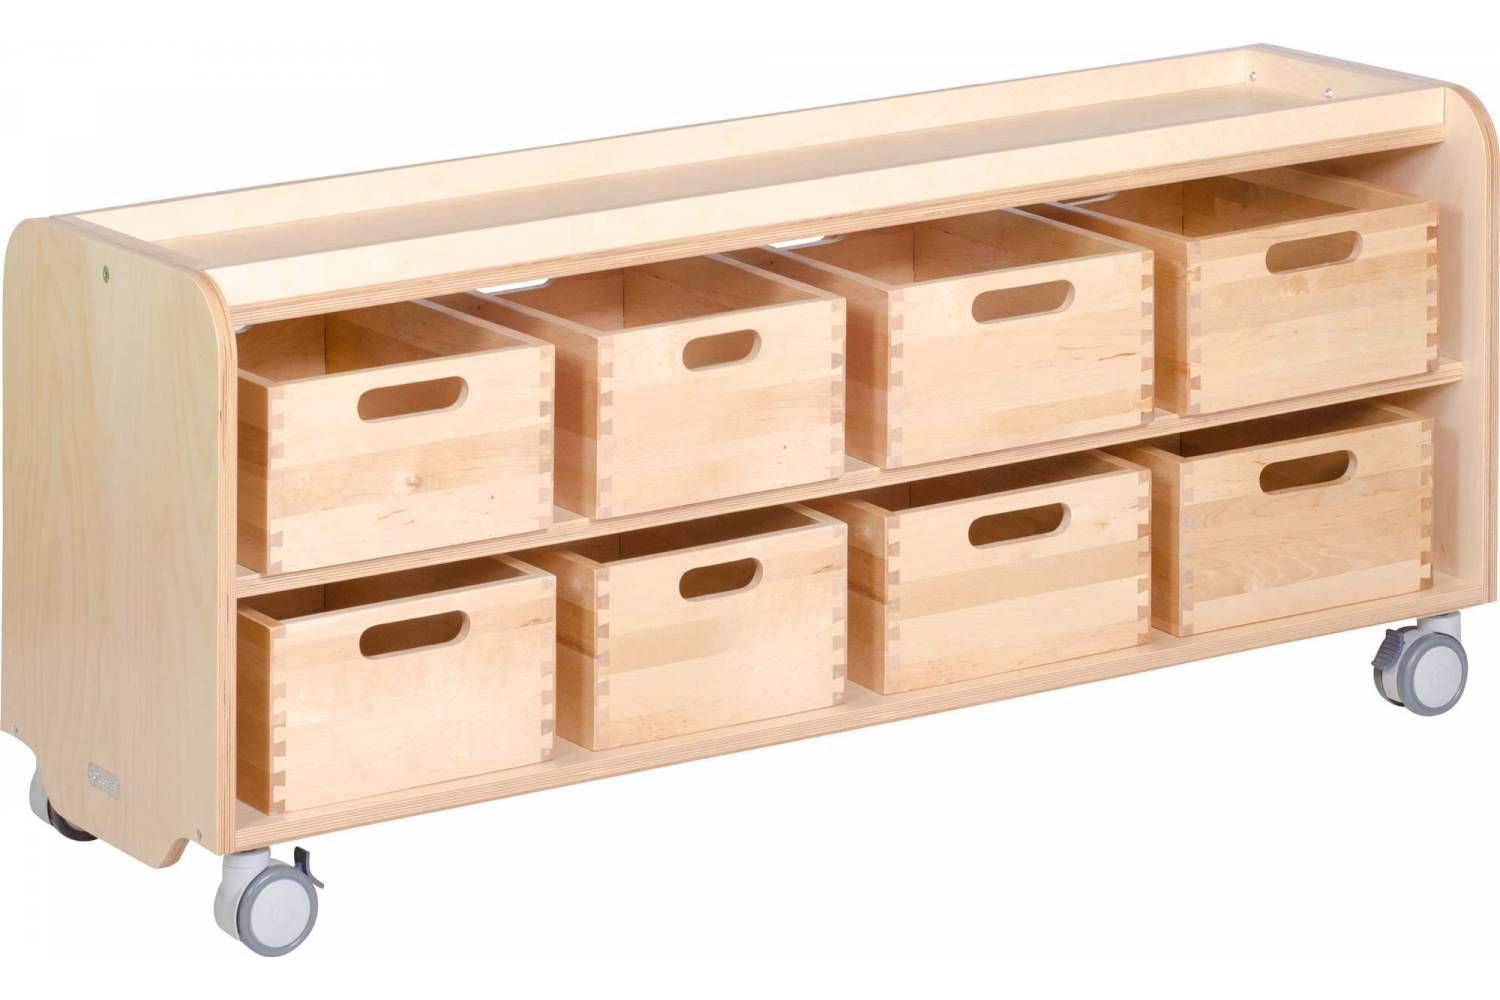 wooden storage trays